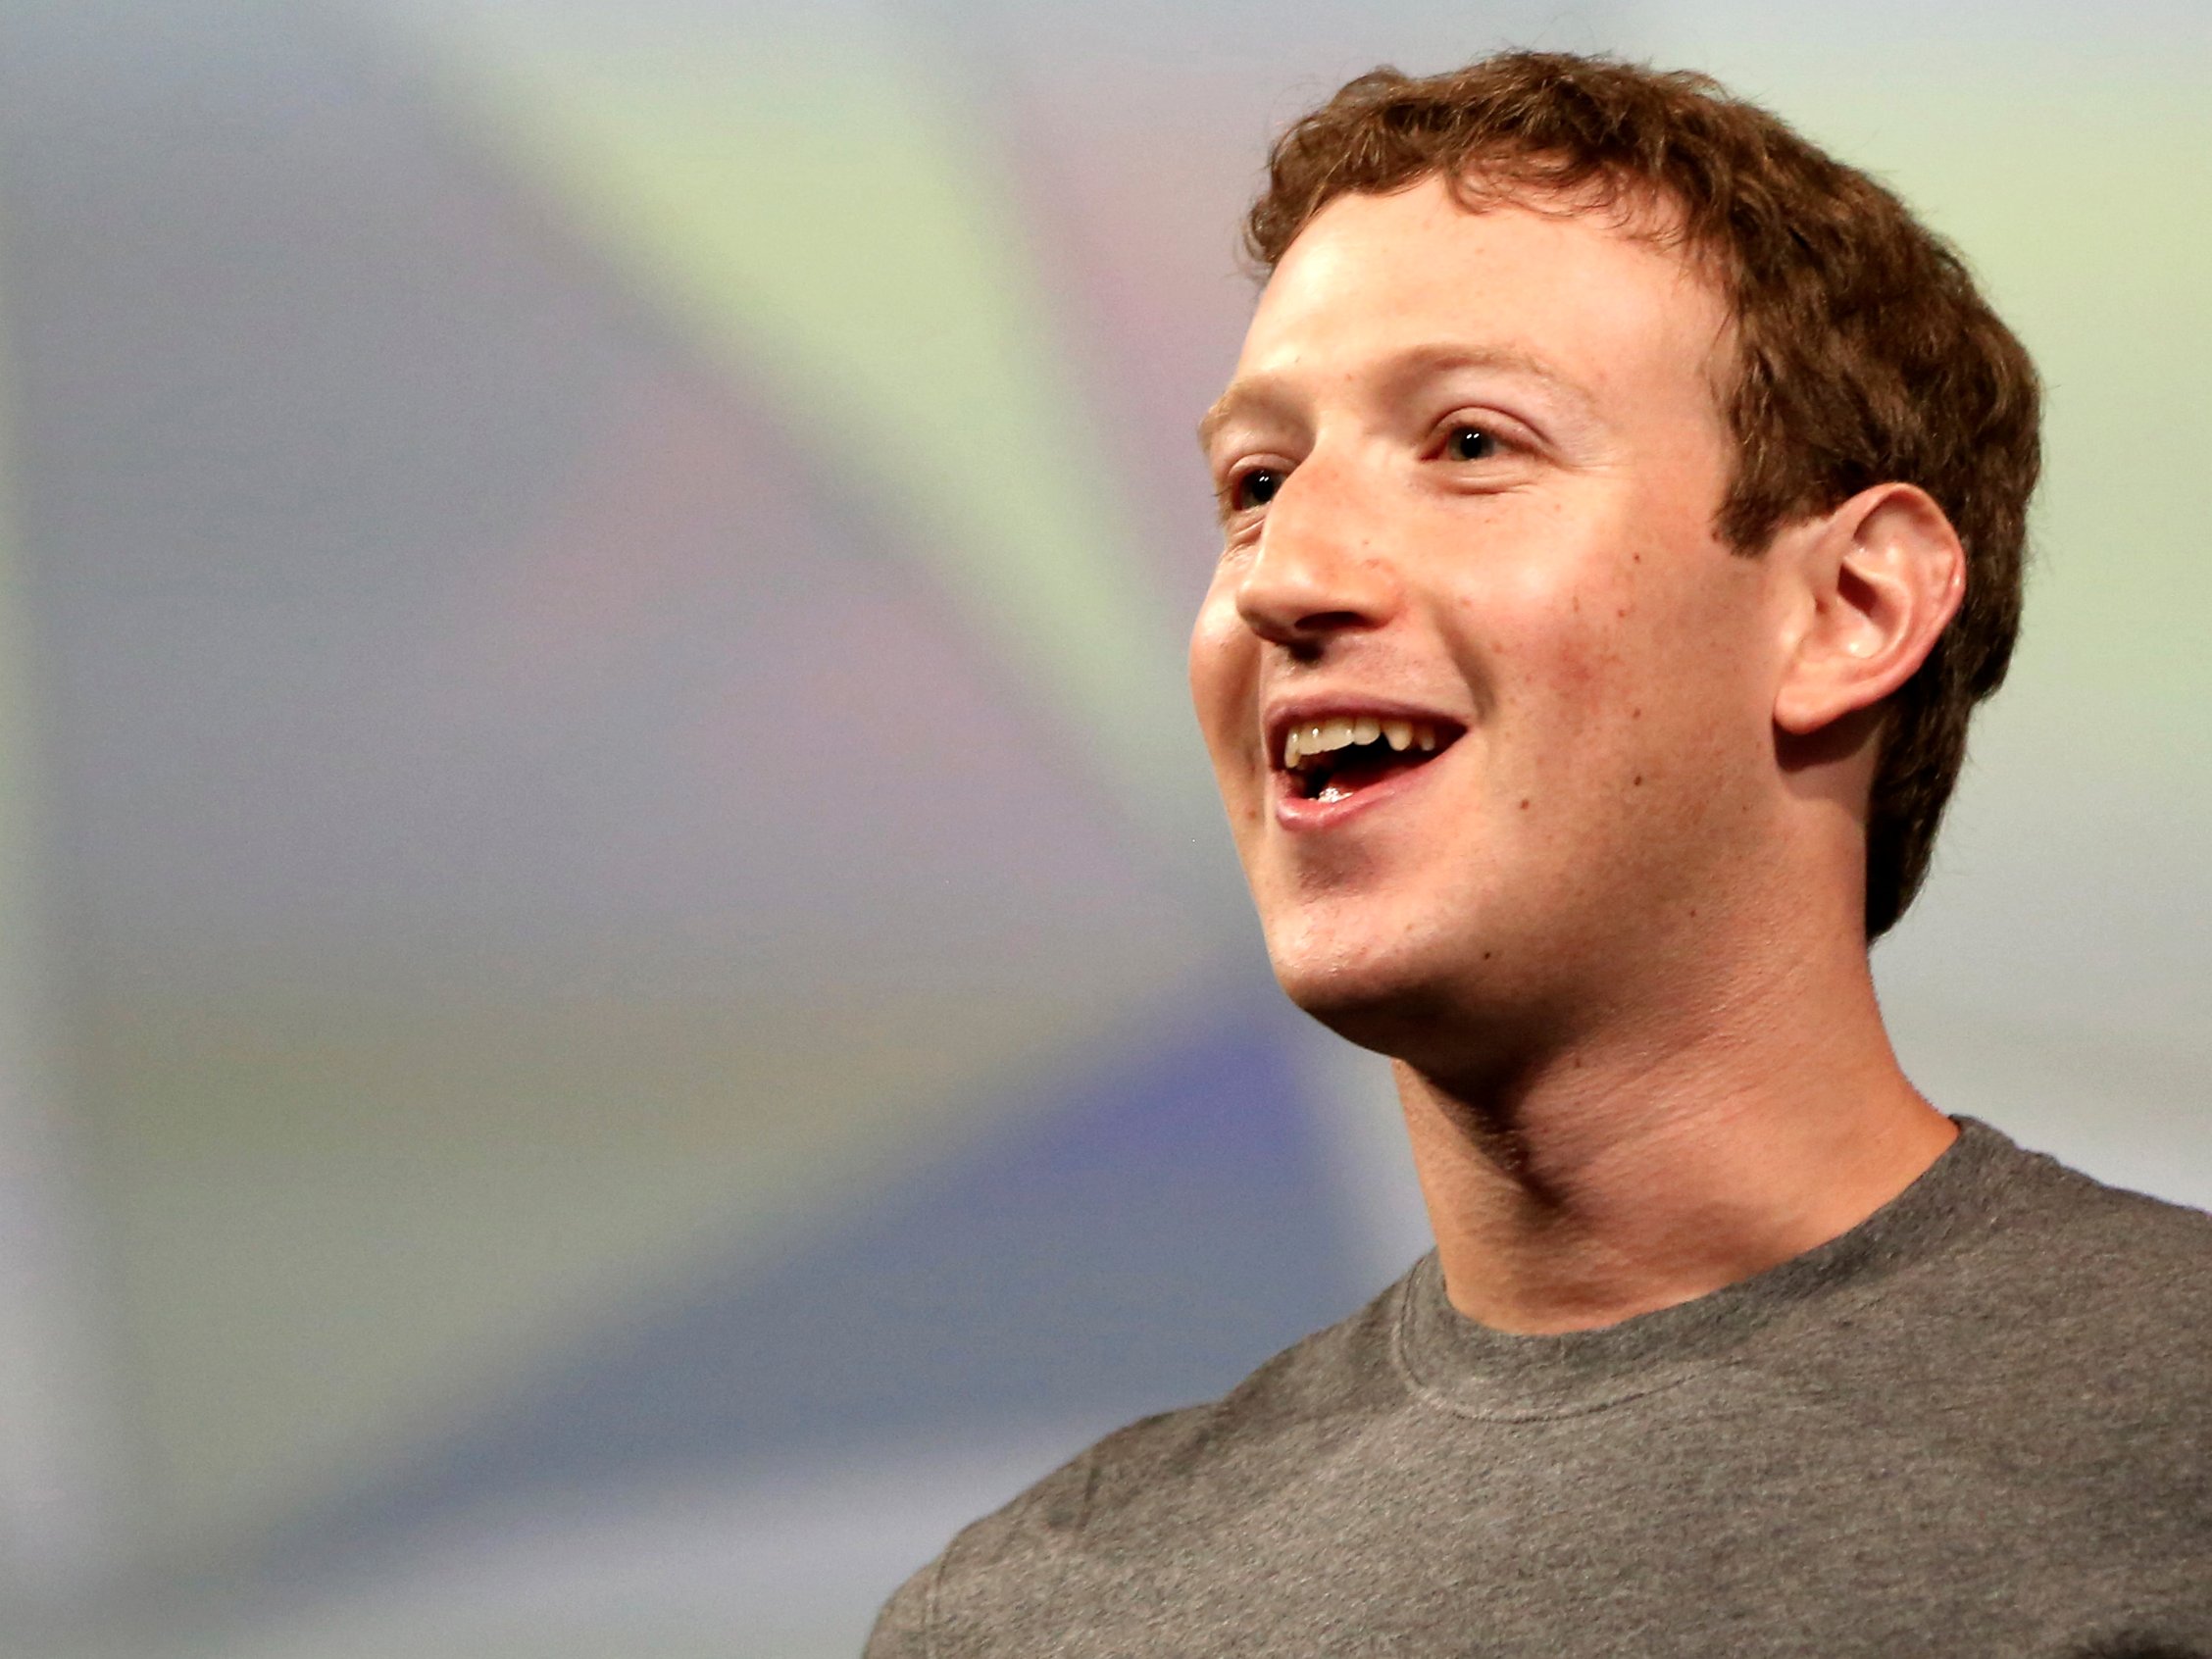 مارک زوکربرگ از سه پروژه ی عظیم فیس بوک در 10 سال آینده می گوید!